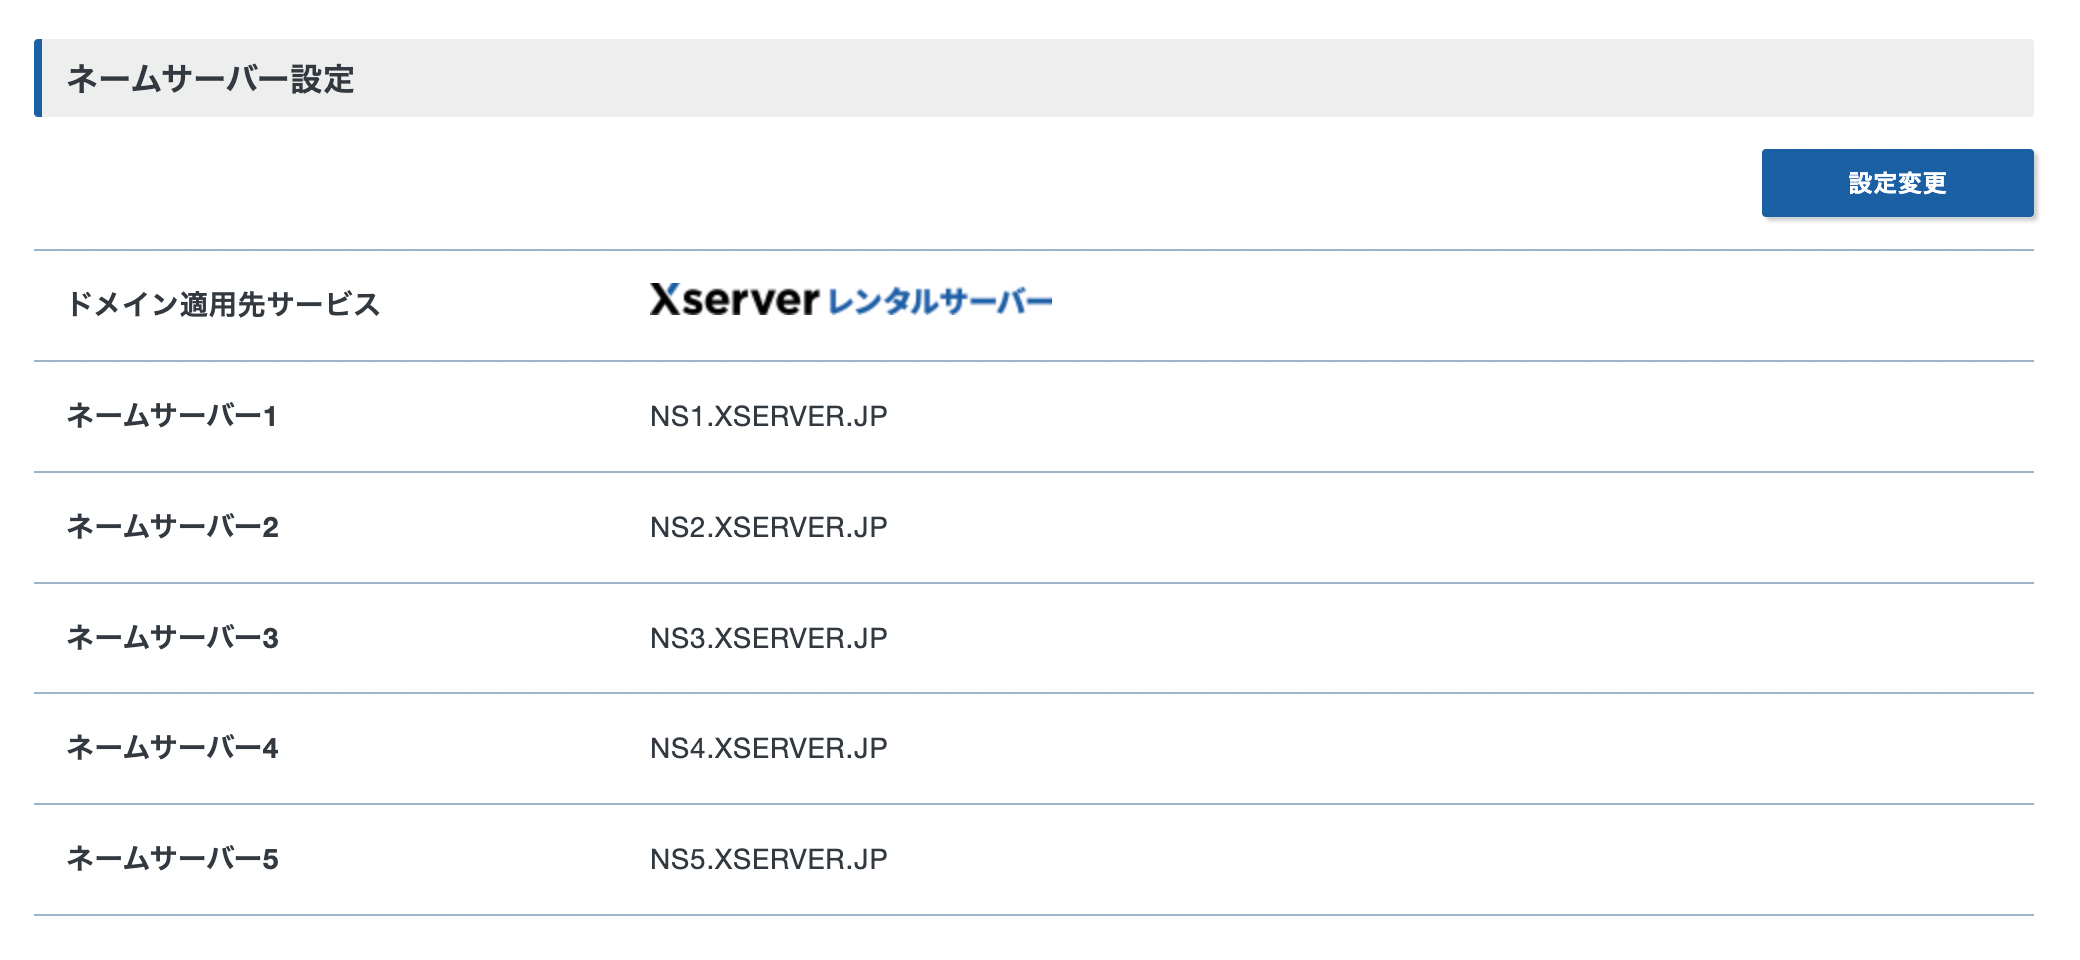 ネームサーバー設定　設定変更
ドメイン適用先サービス　Xserverレンタルサーバー
ネームサーバー1　NS1.XSERVER.JP
ネームサーバー2　NS2.XSERVER.JP
ネームサーバー3　NS3.XSERVER.JP
ネームサーバー4　NS4.XSERVER.JP
ネームサーバー5　NS5.XSERVER.JP